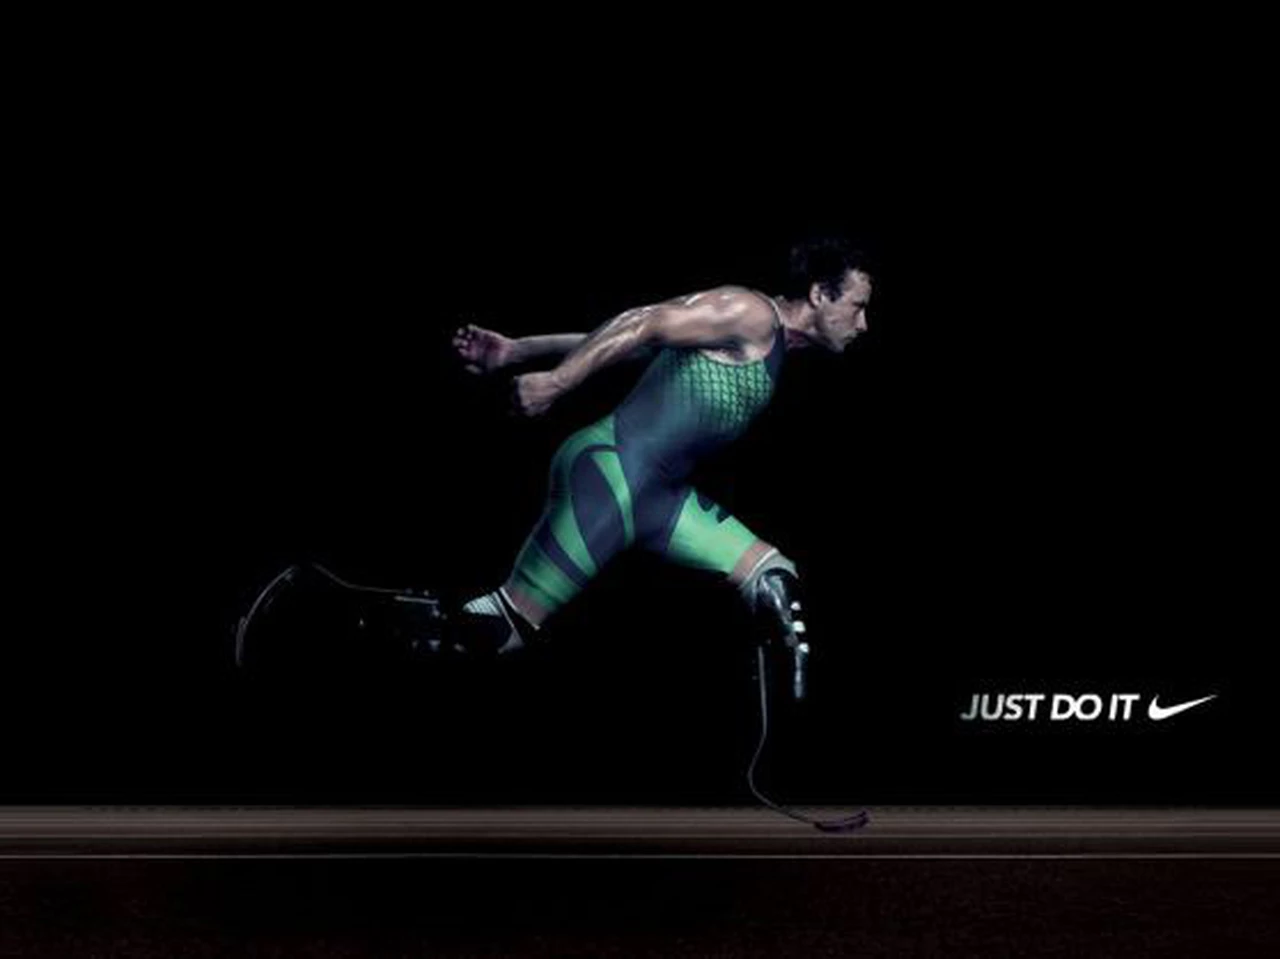 El siniestro origen del slogan "Just do it" de Nike